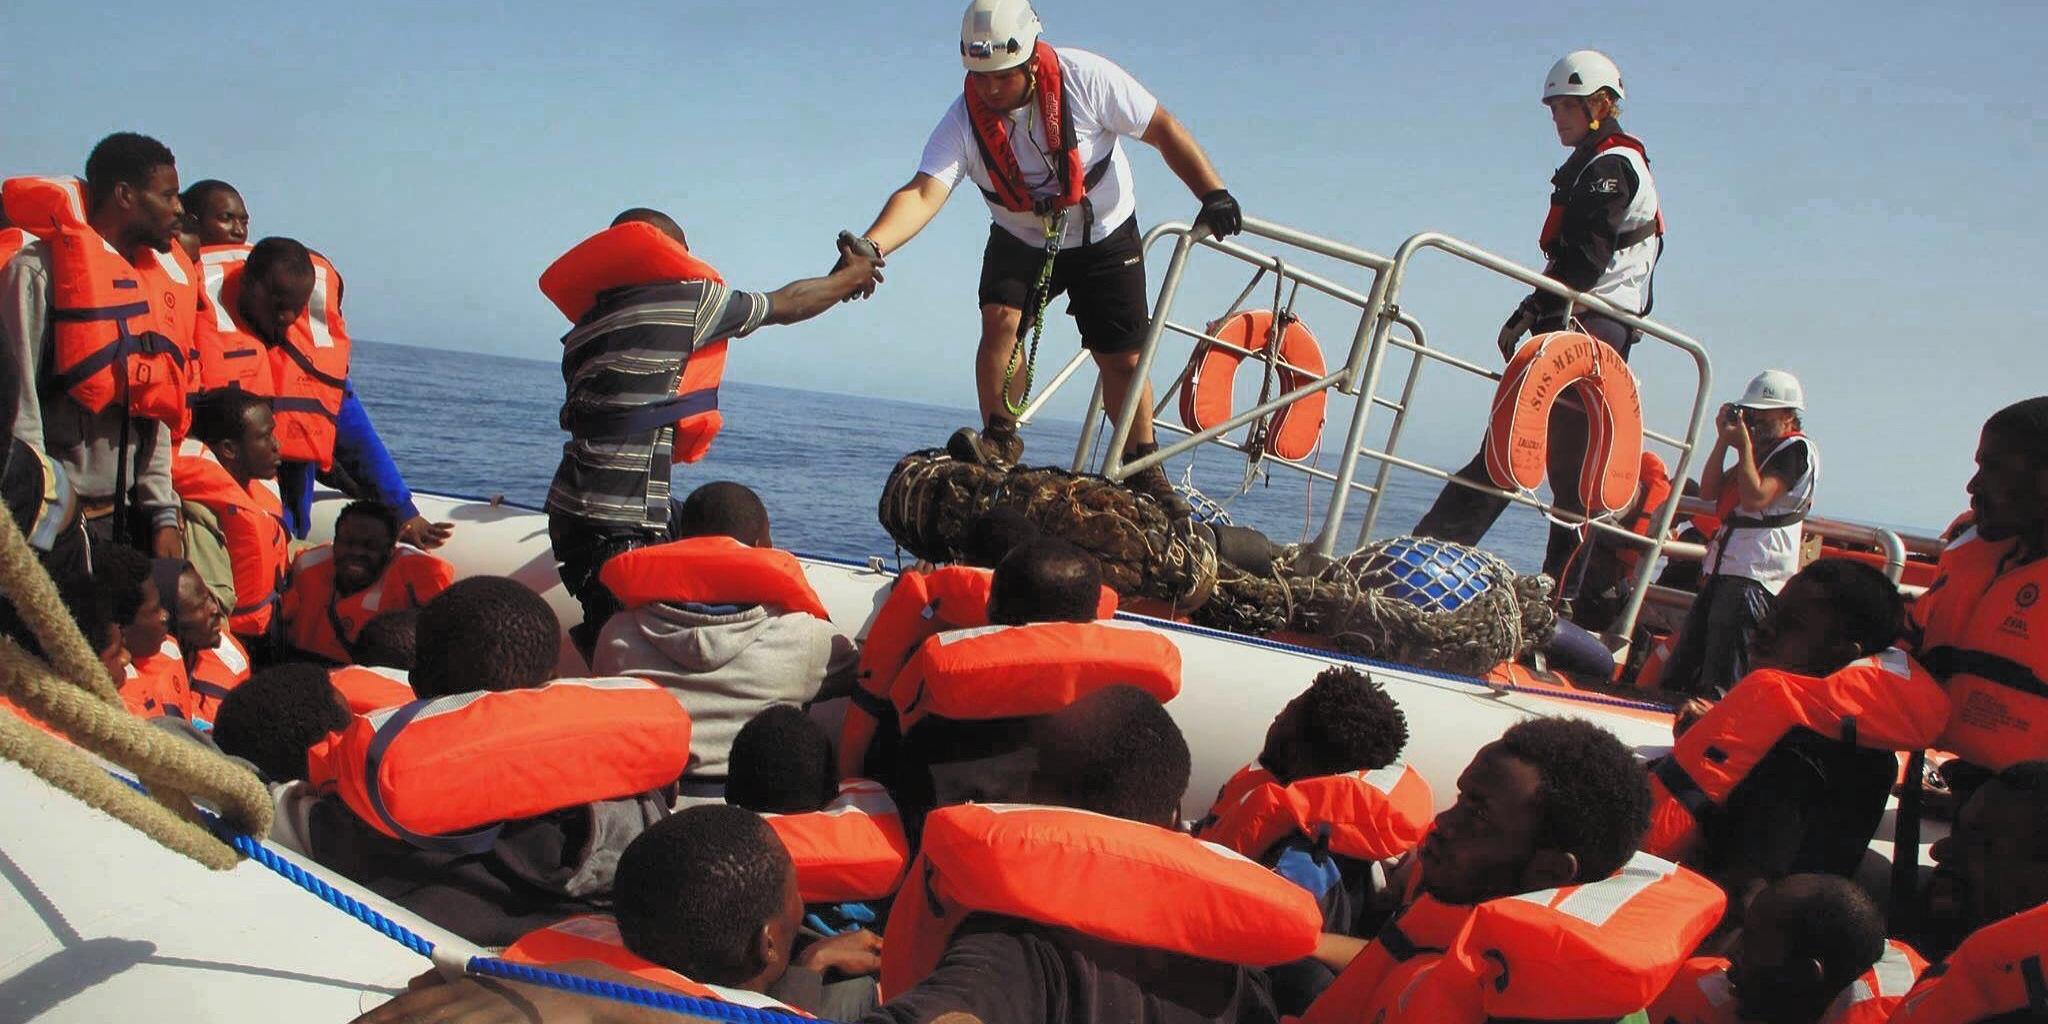 In maroden Schlaubooten sitzen oft bis zu 150 Menschen, um über das Mittelmeer nach Europa zu flüchten.